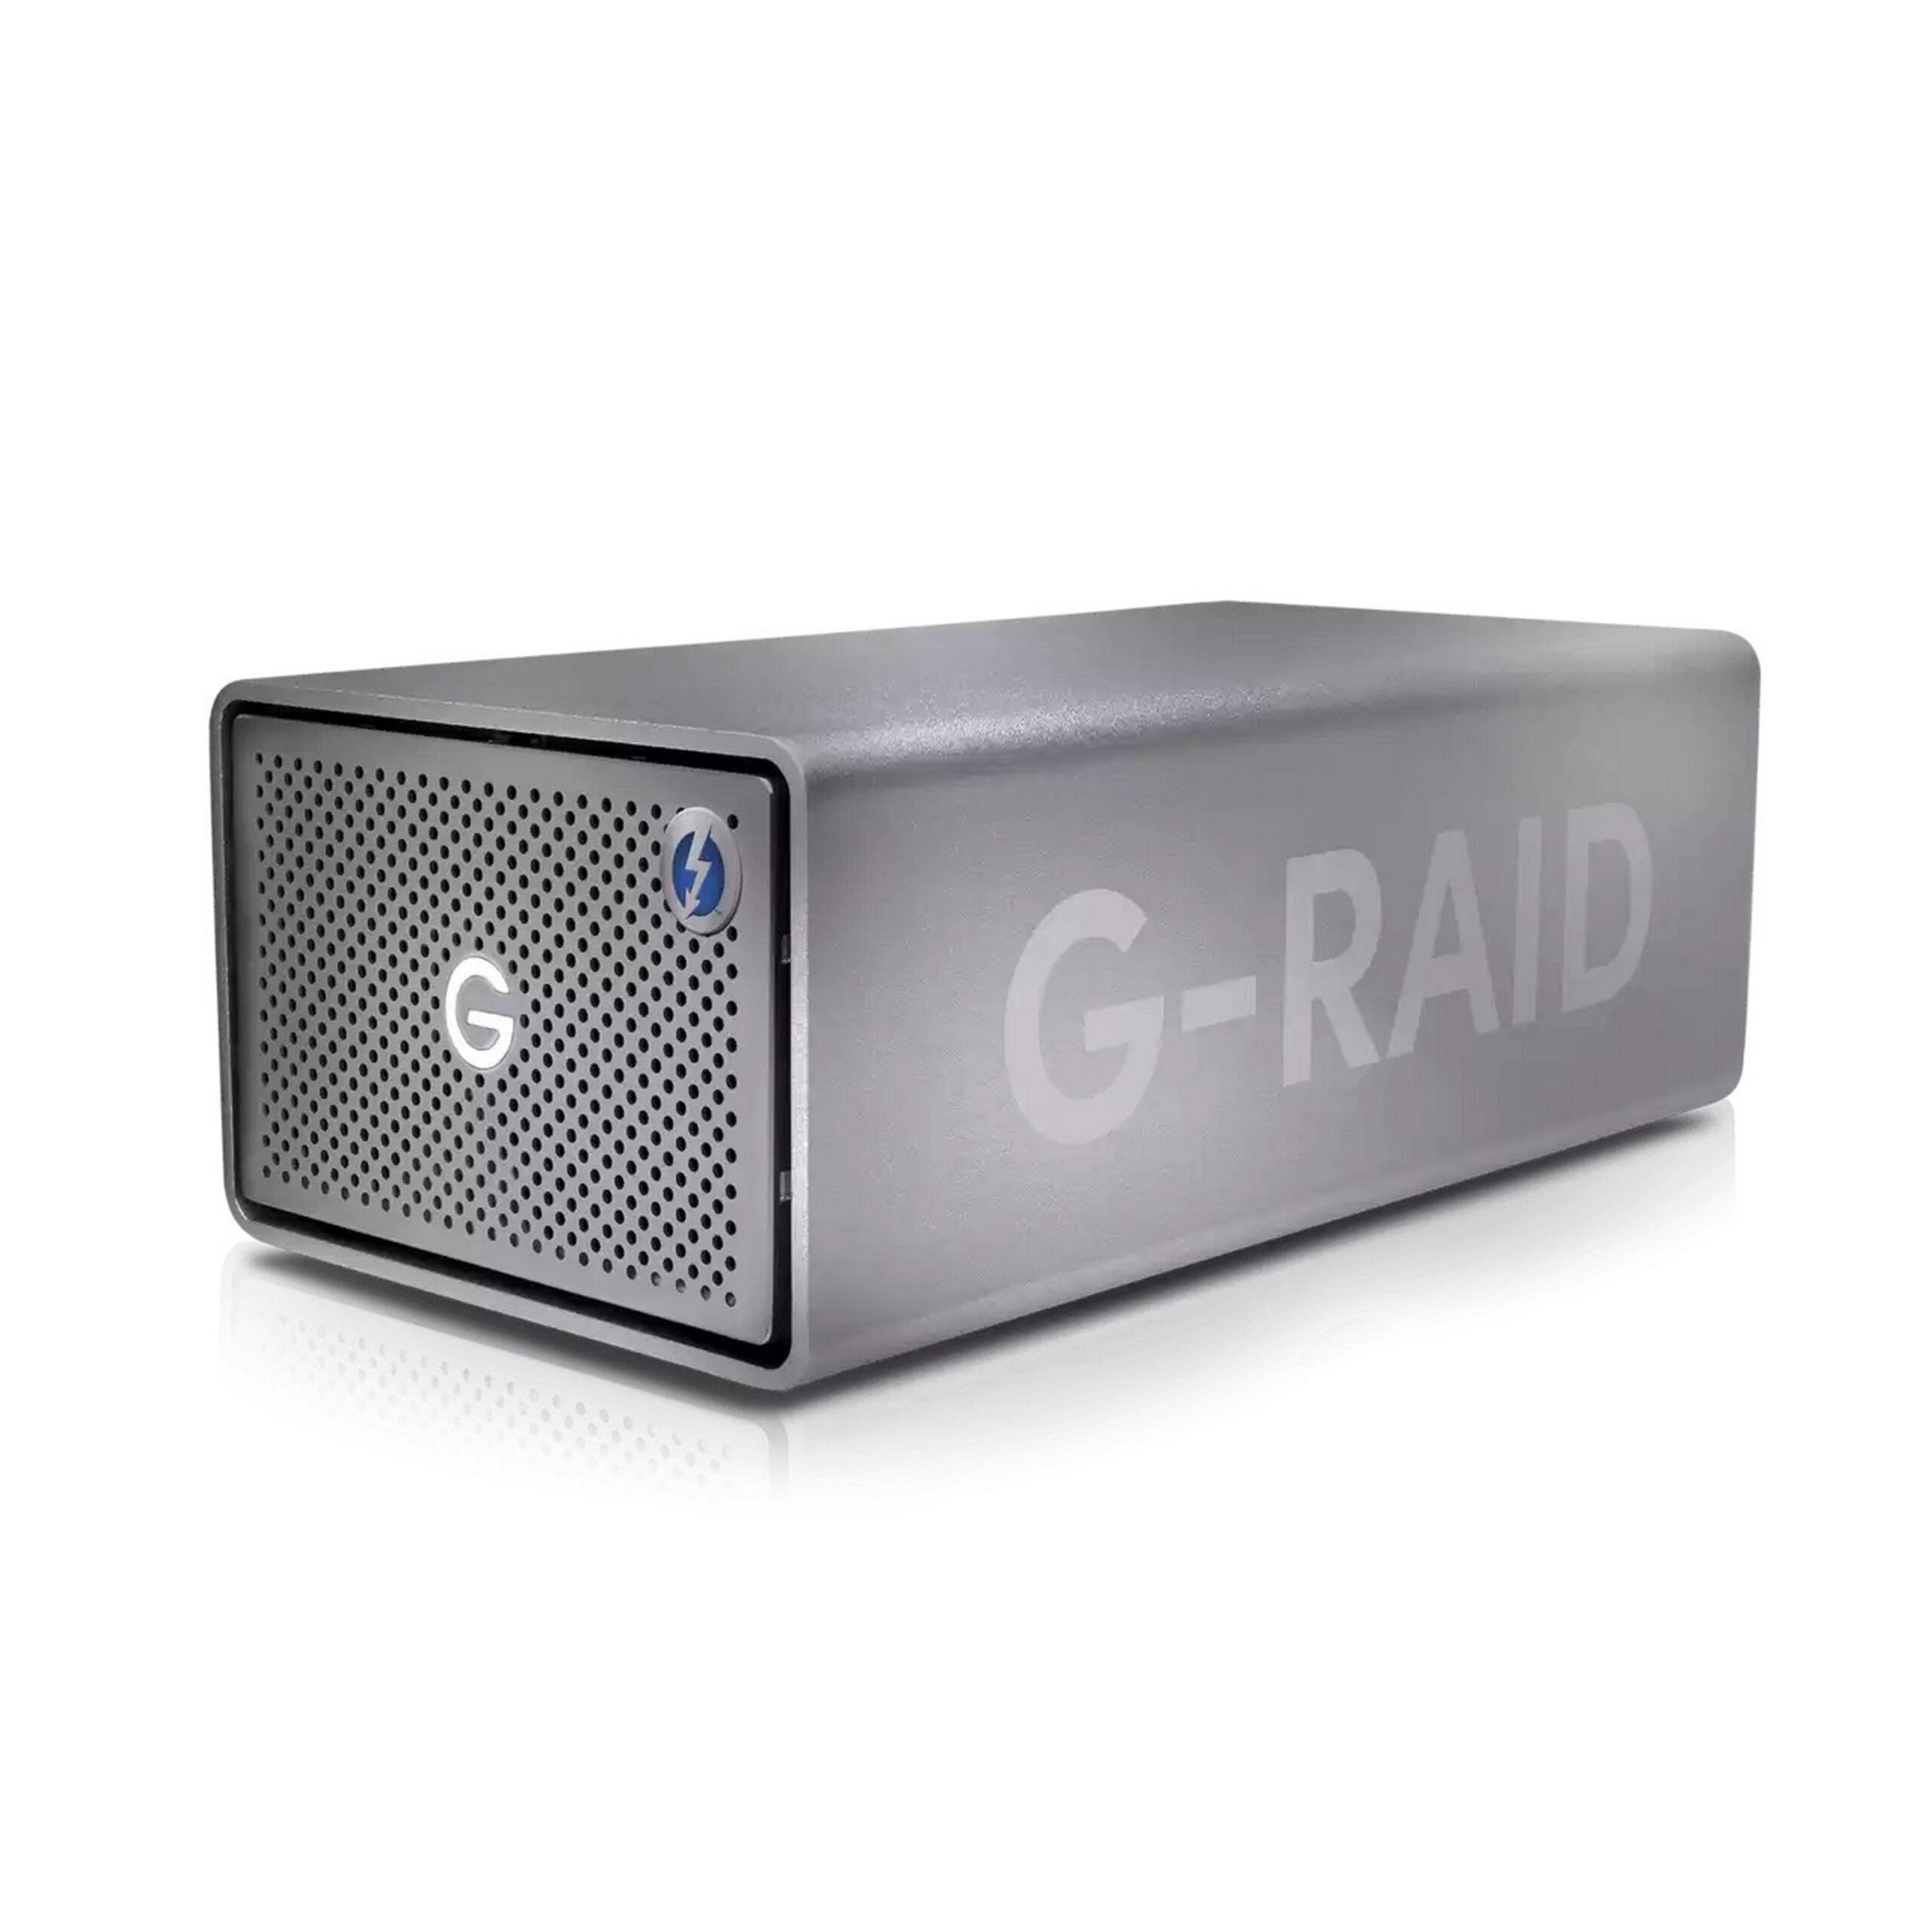 お買い得限定SALE【未使用】G-RAID with Thunderbolt 3 外付けハードディスク・ドライブ